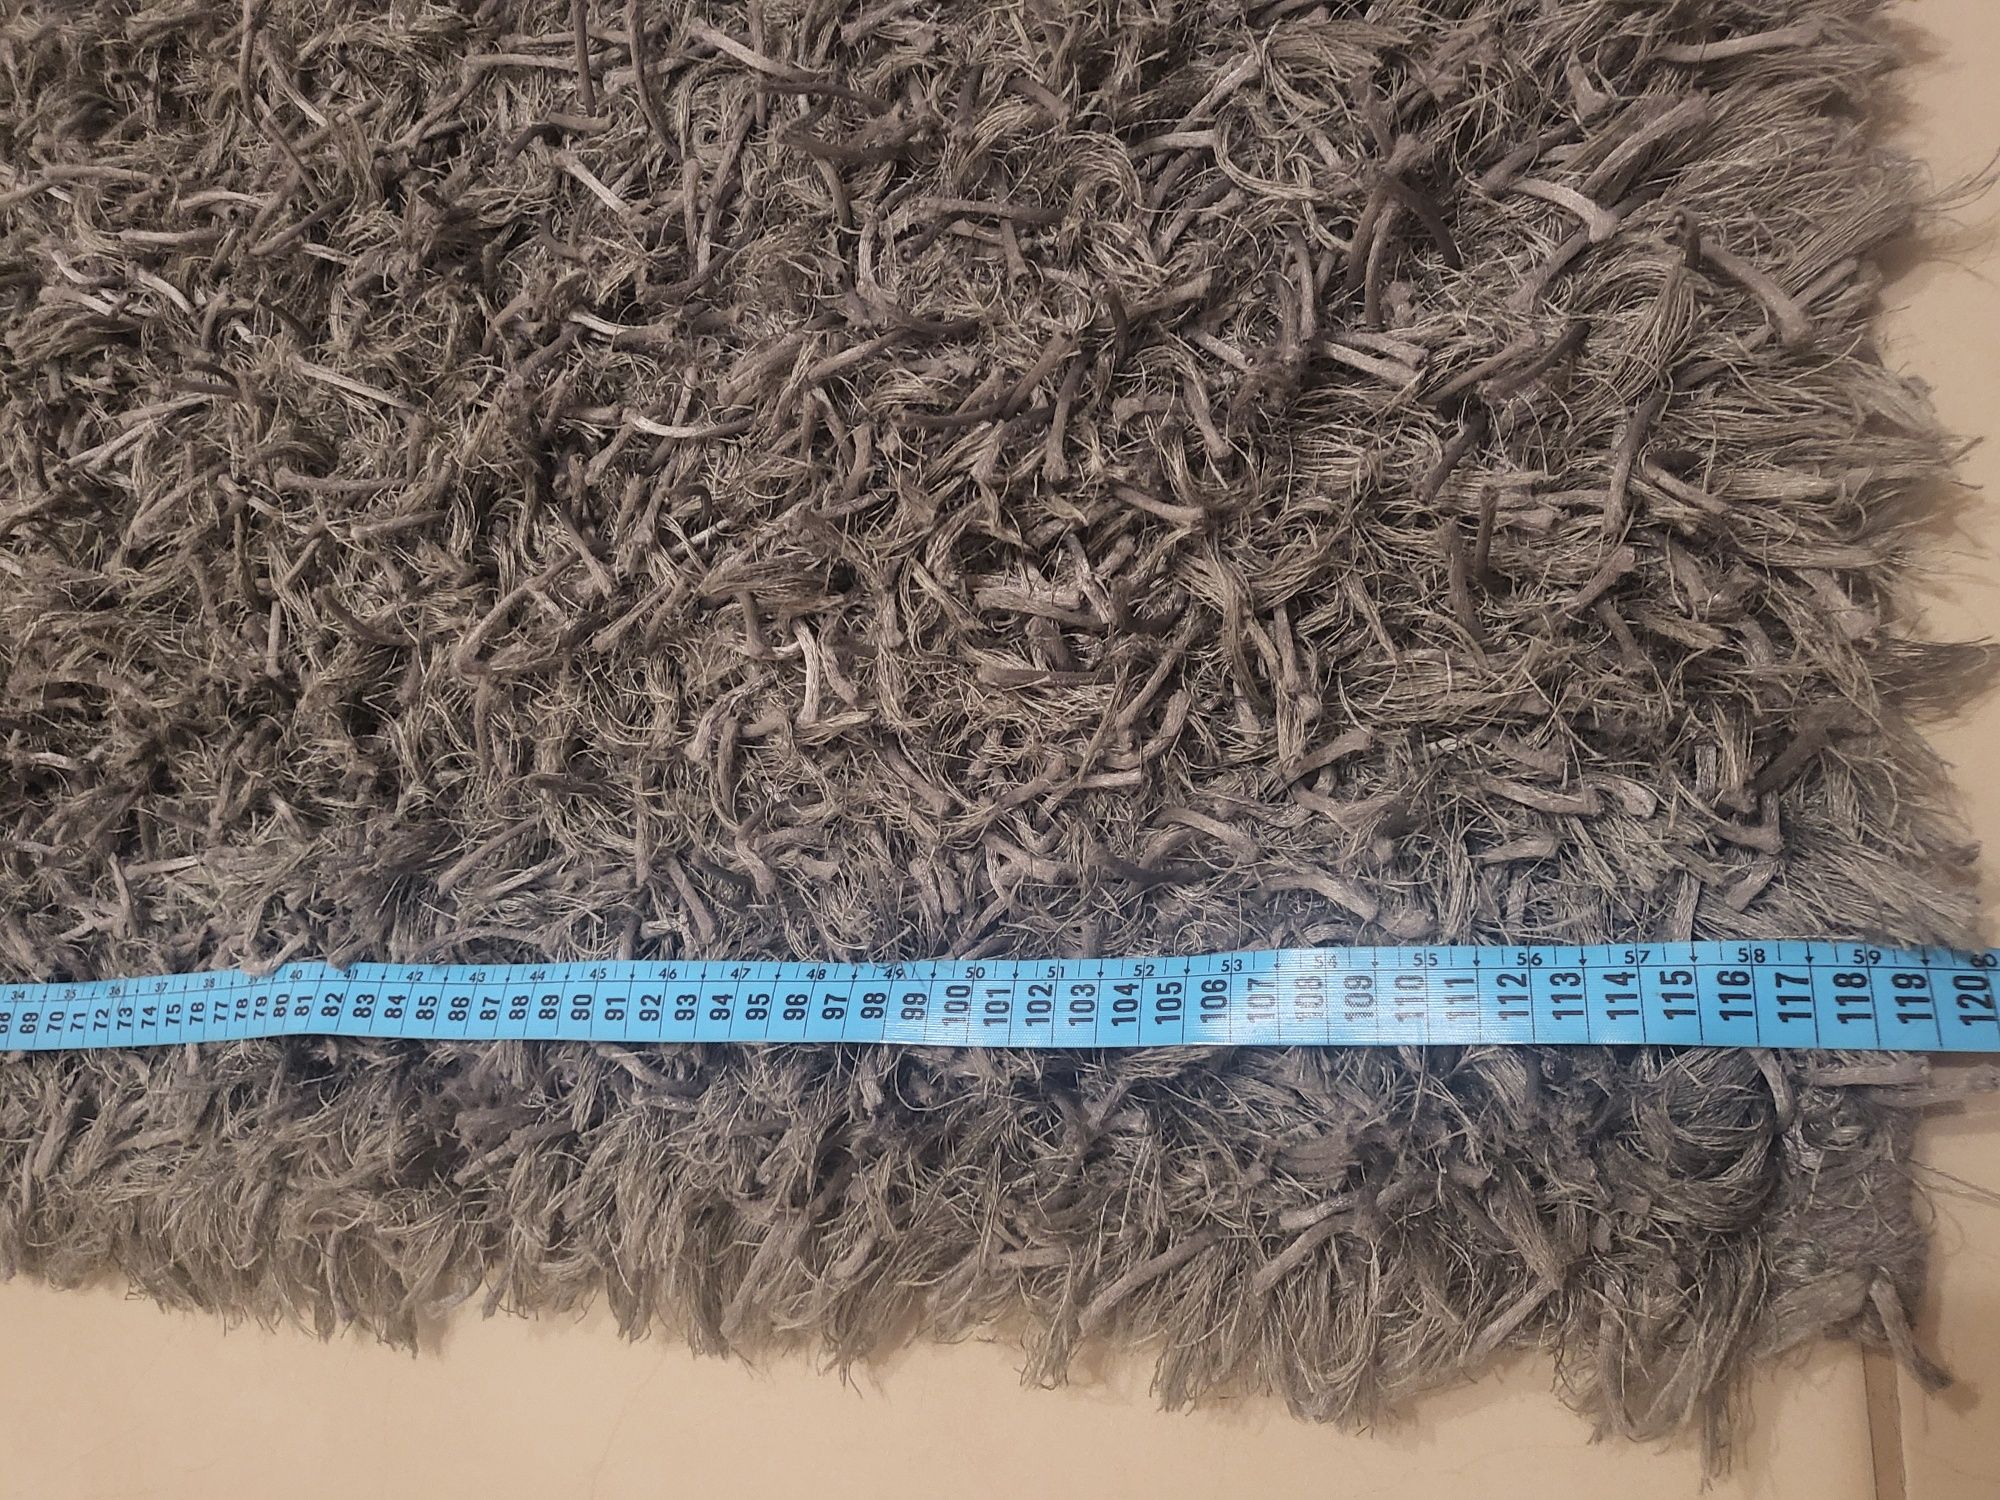 Carpete cinza com pelo grosso e fino